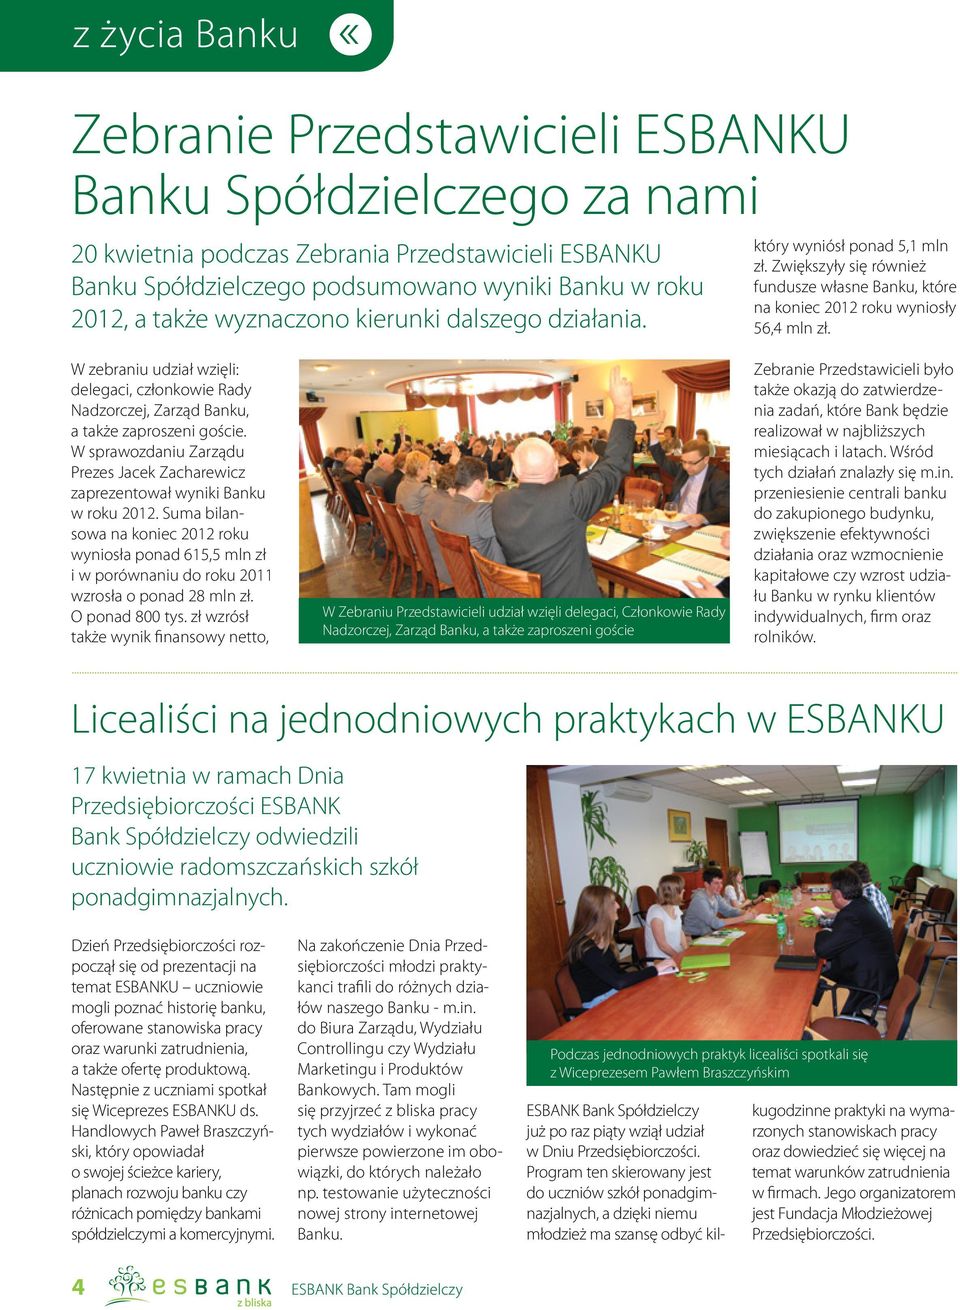 W zebraniu udział wzięli: delegaci, członkowie Rady Nadzorczej, Zarząd Banku, a także zaproszeni goście. W sprawozdaniu Zarządu Prezes Jacek Zacharewicz zaprezentował wyniki Banku w roku 2012.